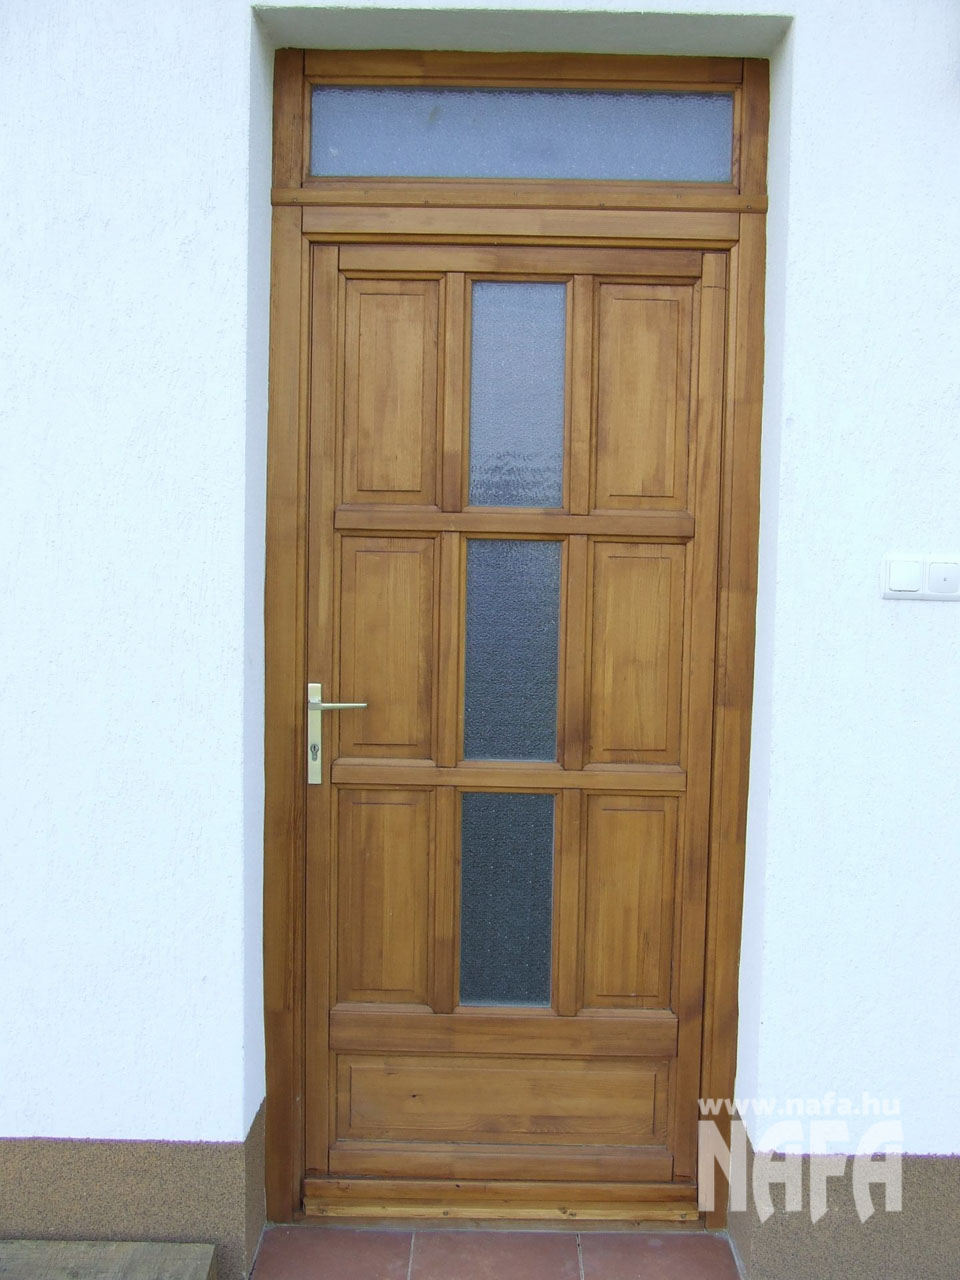 Fa nyílászárók, egyedi festett ajtó, Pécs Közintézmény